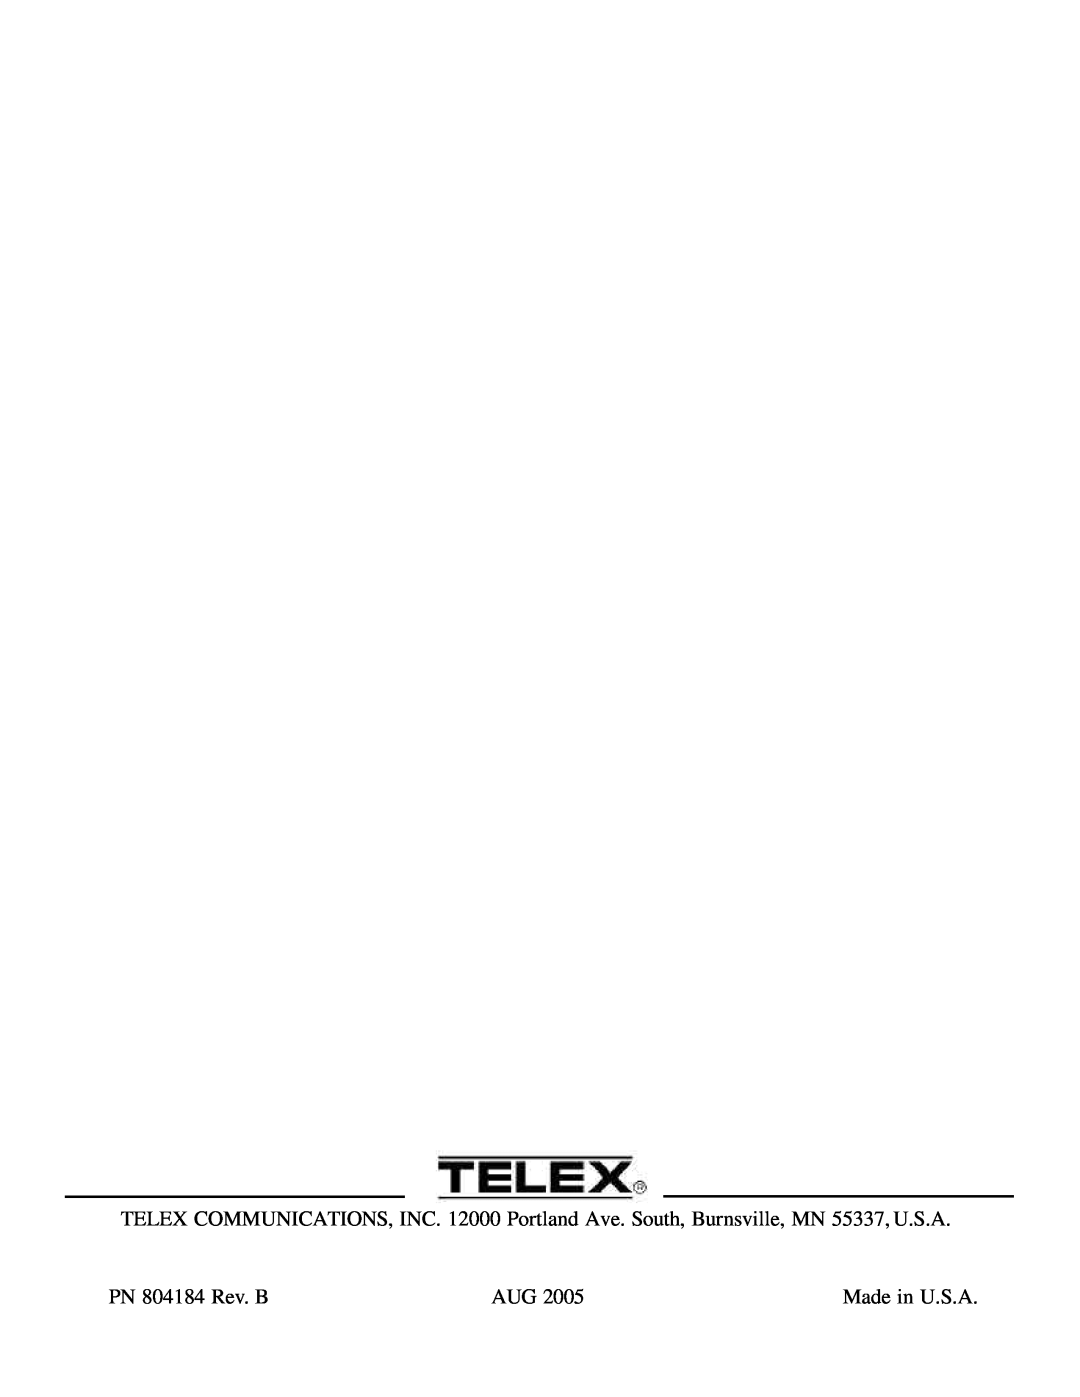 Telex TT-16, TR-16 manual PN 804184 Rev. B, Made in U.S.A 